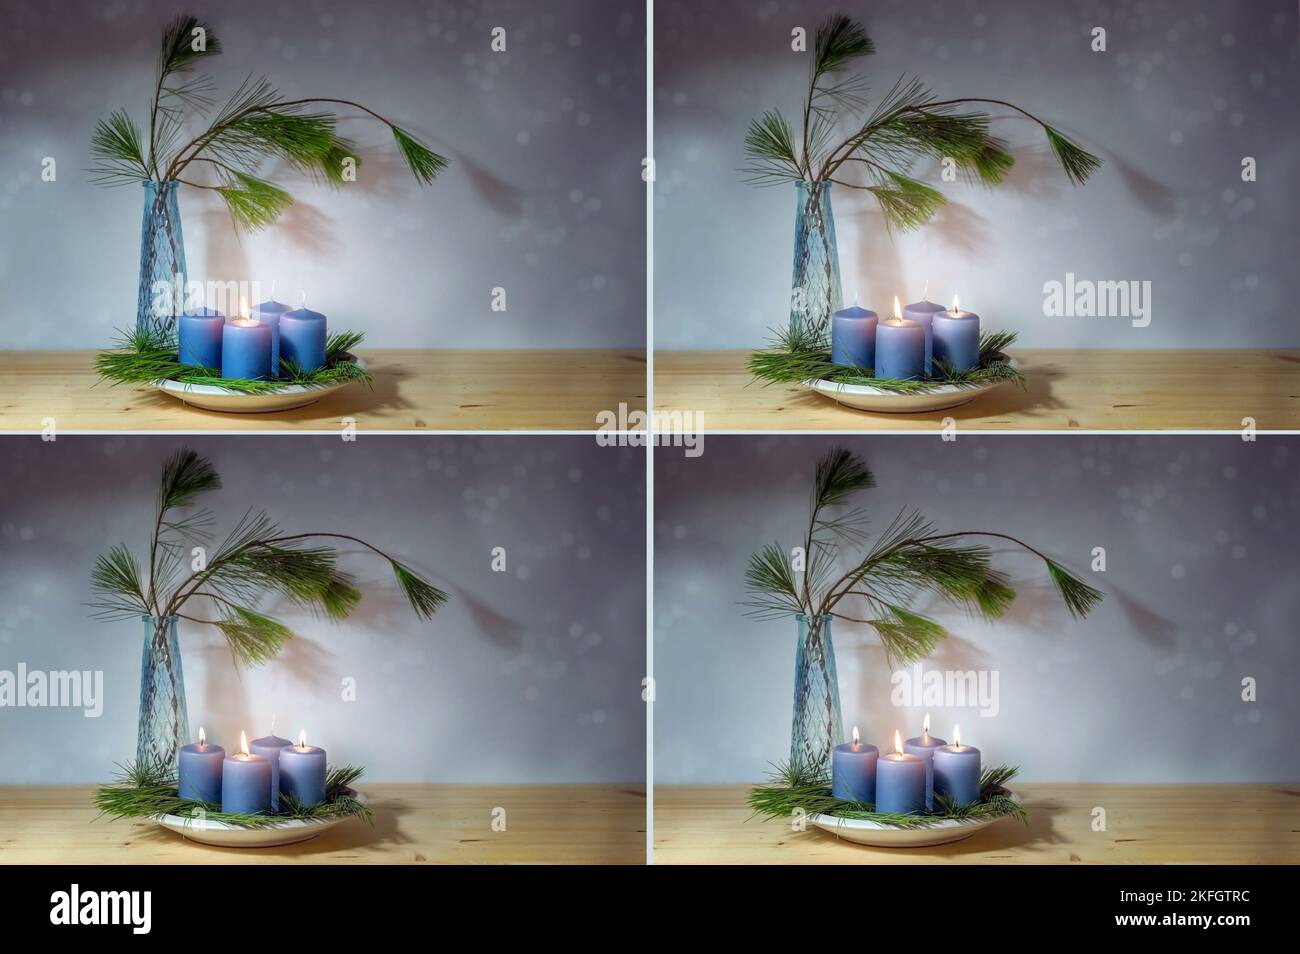 Quattro immagini con candele blu, illuminate per il primo al quarto avvento, vaso con rami di pino, bokeh innevato su sfondo grigio porpora, serie per Foto Stock